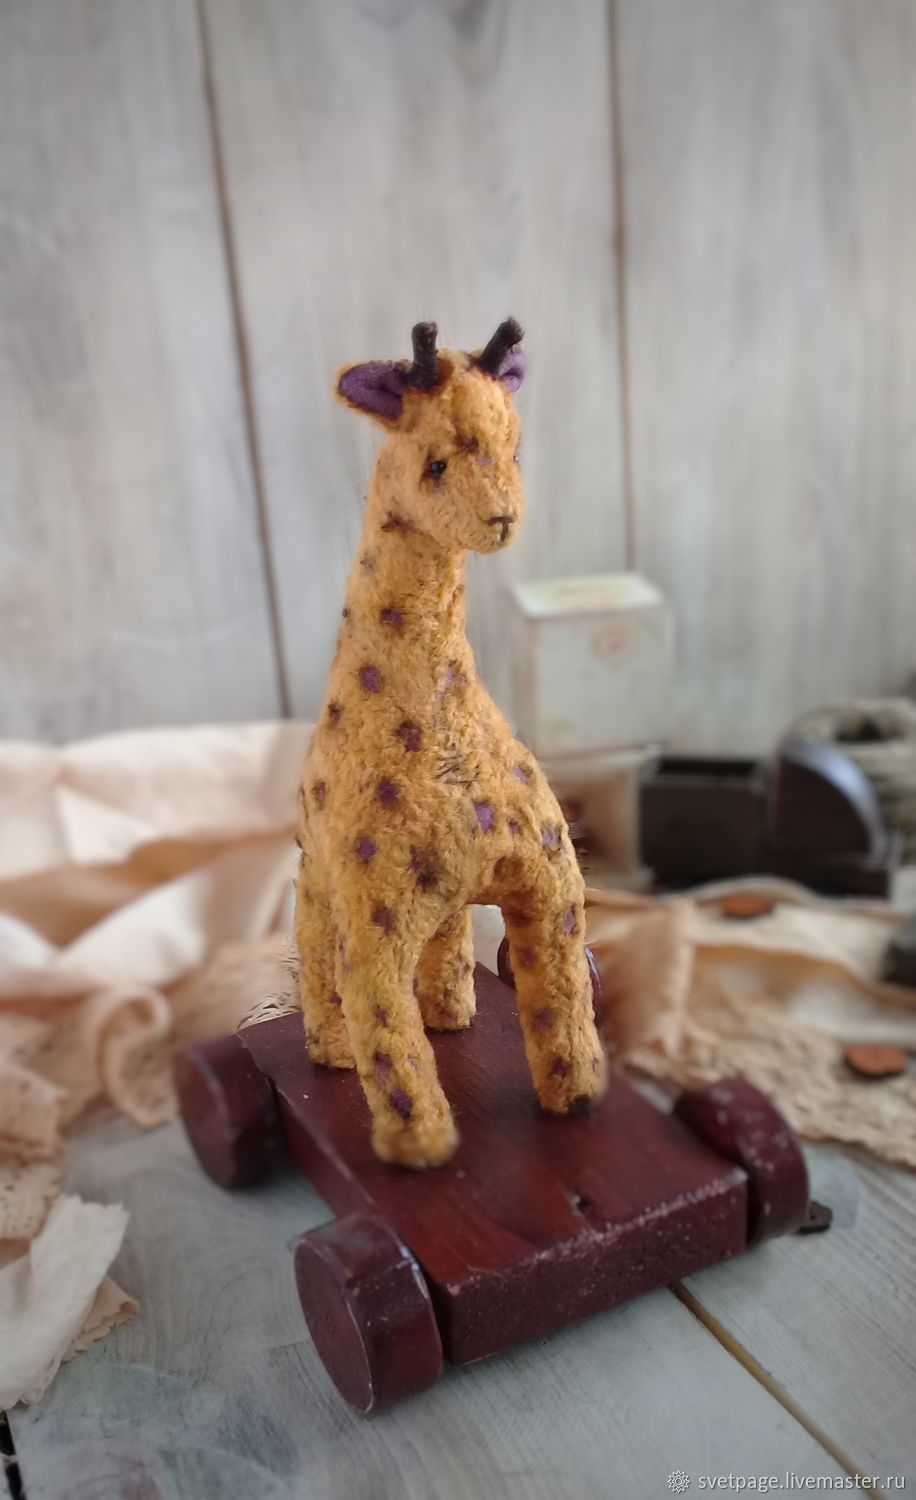 НА ЗАКАЗ! Жираф игрушка ручной работы для мальчика или девочки